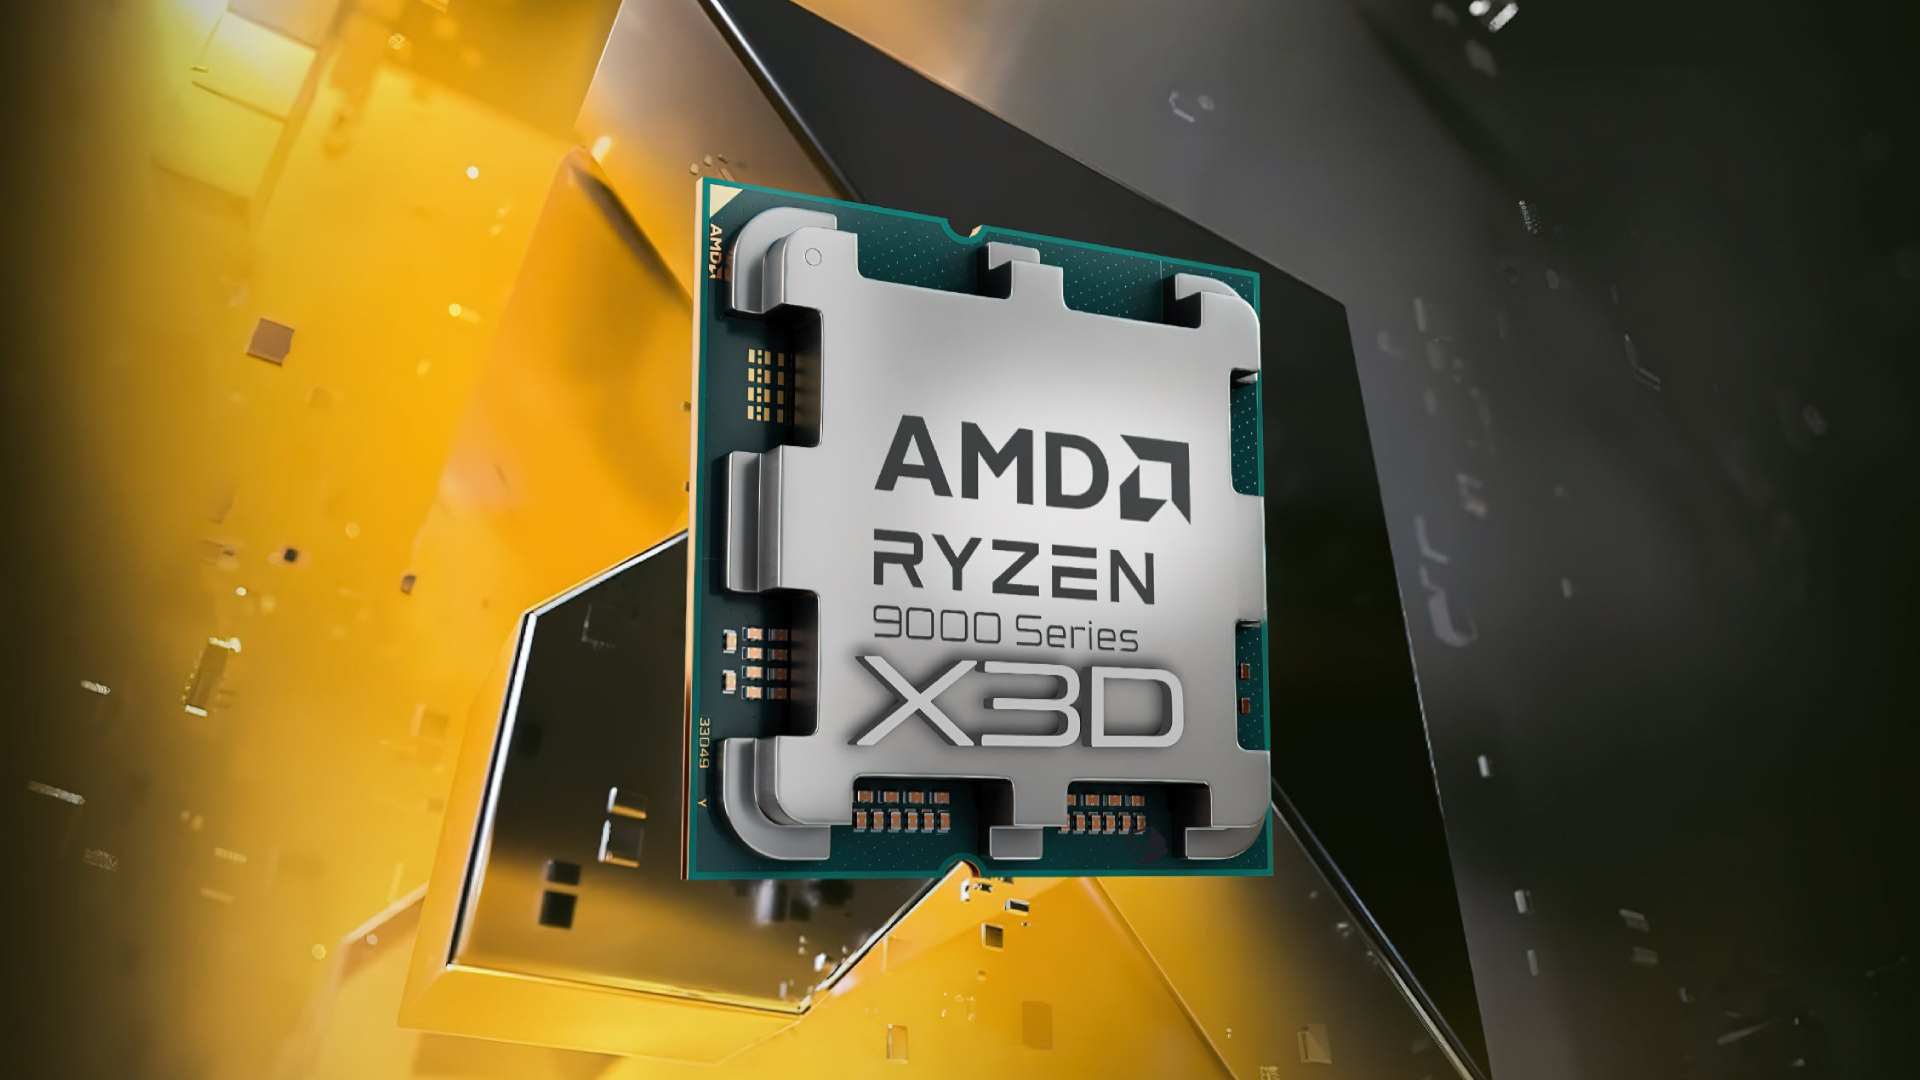 AMD Ryzen 90003XD Overclock desteği ile geliyor!